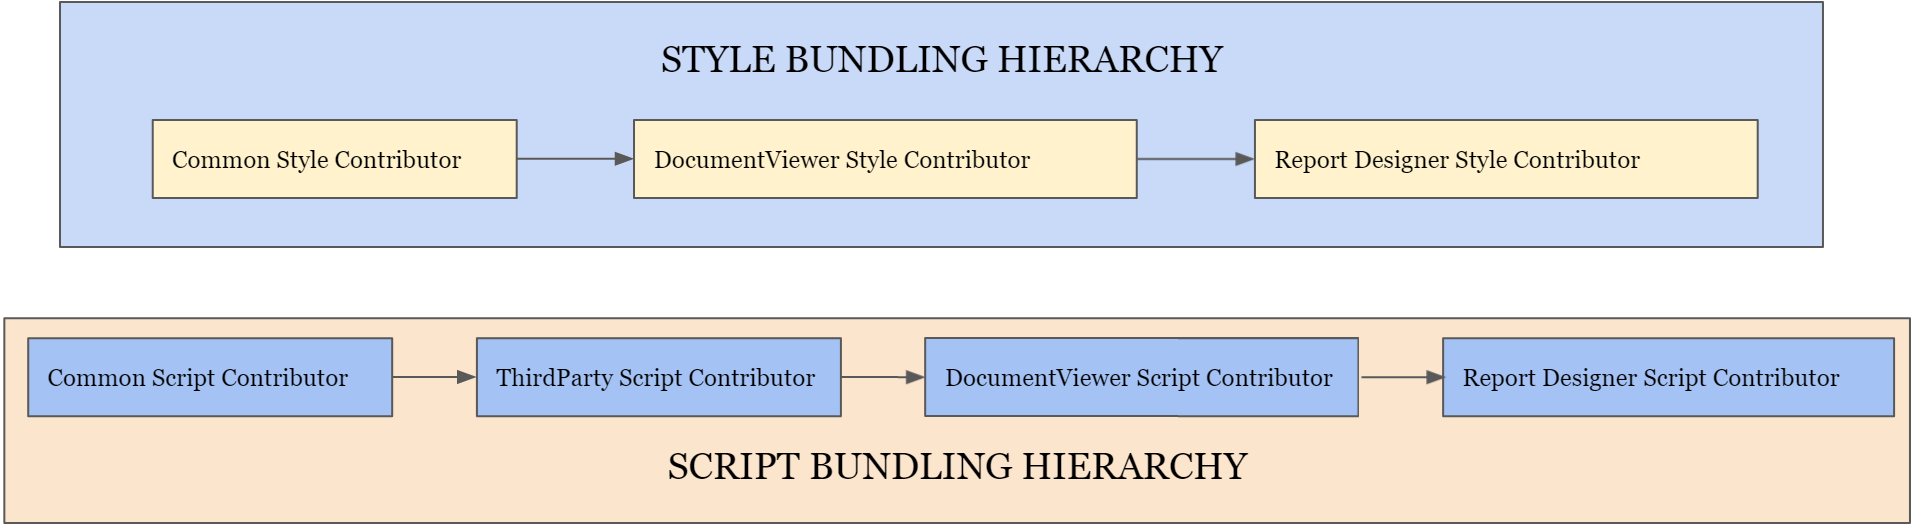 bundle-hierarchy